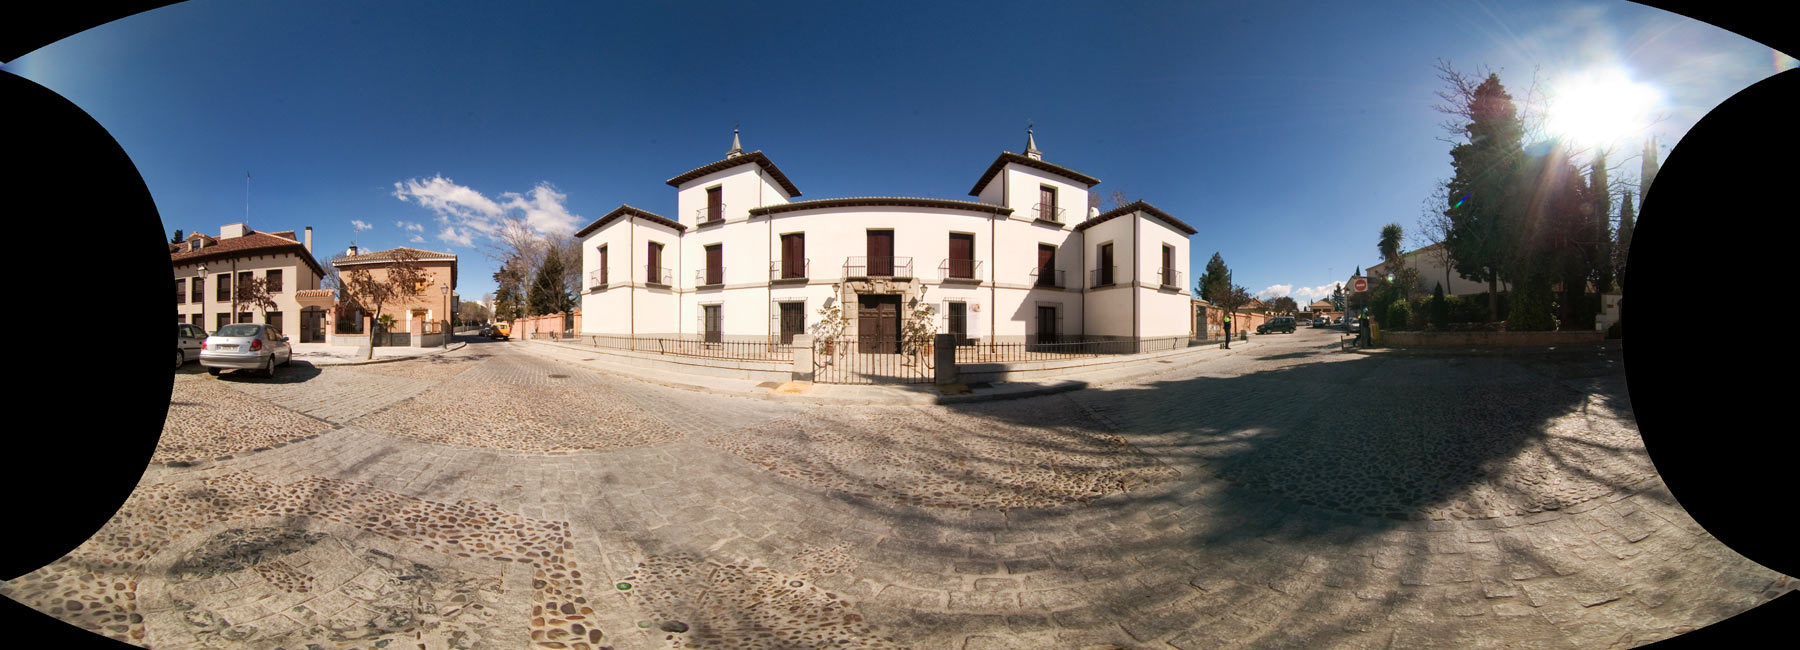 Visita virtual del Palacio de Godoy, fachada